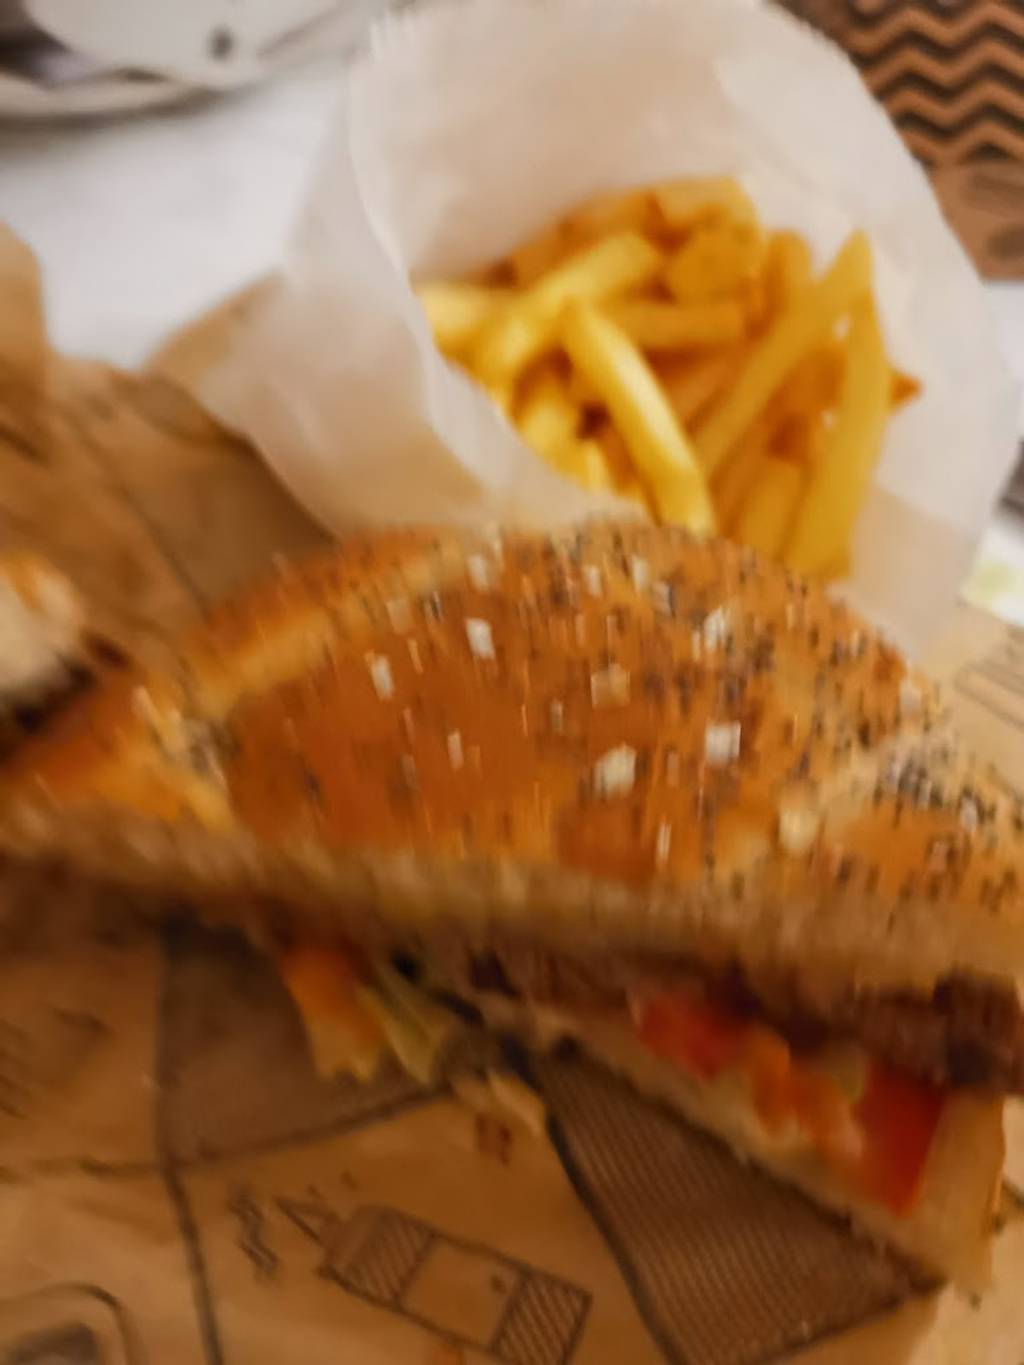 L'instant Burger Les Mureaux - Food Tableware Sandwich Ingredient Recipe